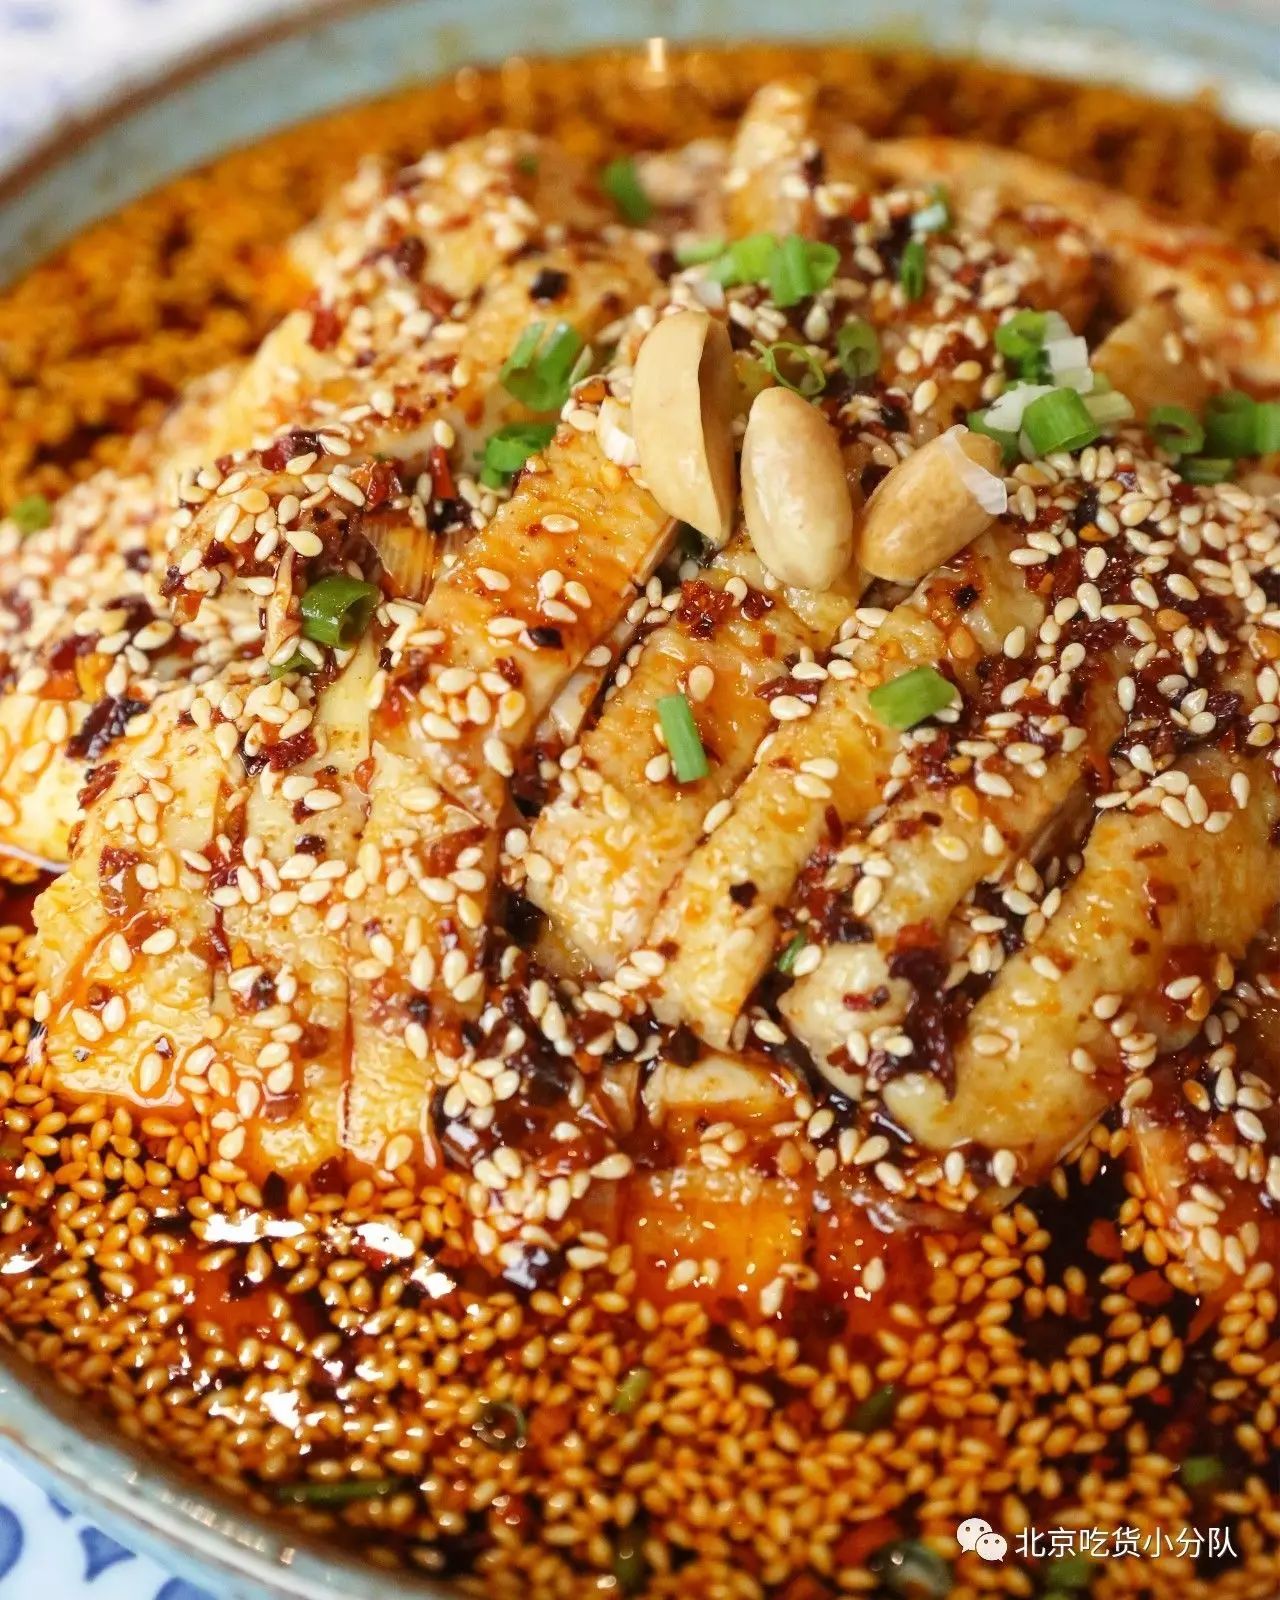 毛血旺是川渝江湖菜鼻祖之一,也算是川菜馆子的必点菜了.